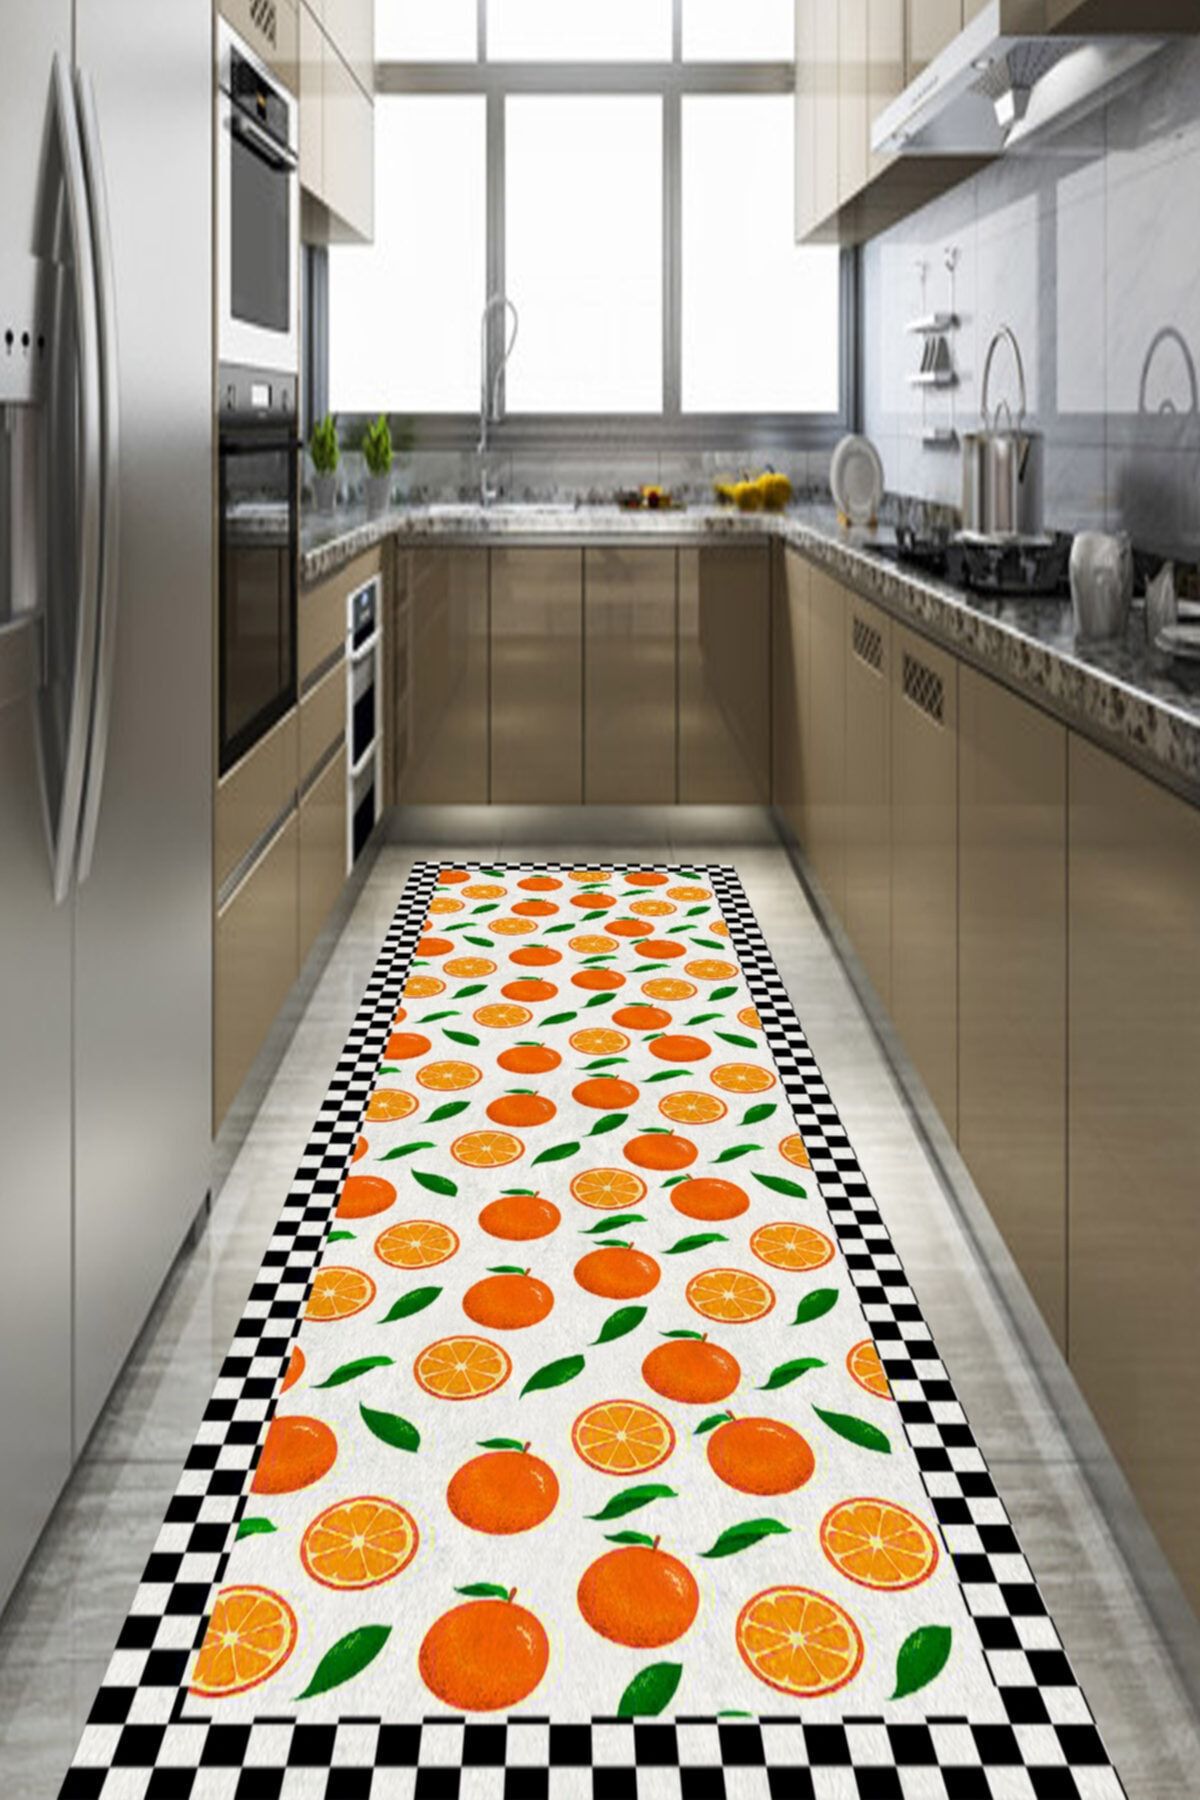 NEVA HOME Dijital Baskılı Siyah Beyaz Çerçeveli Portakal Desenli Mutfak Halısı